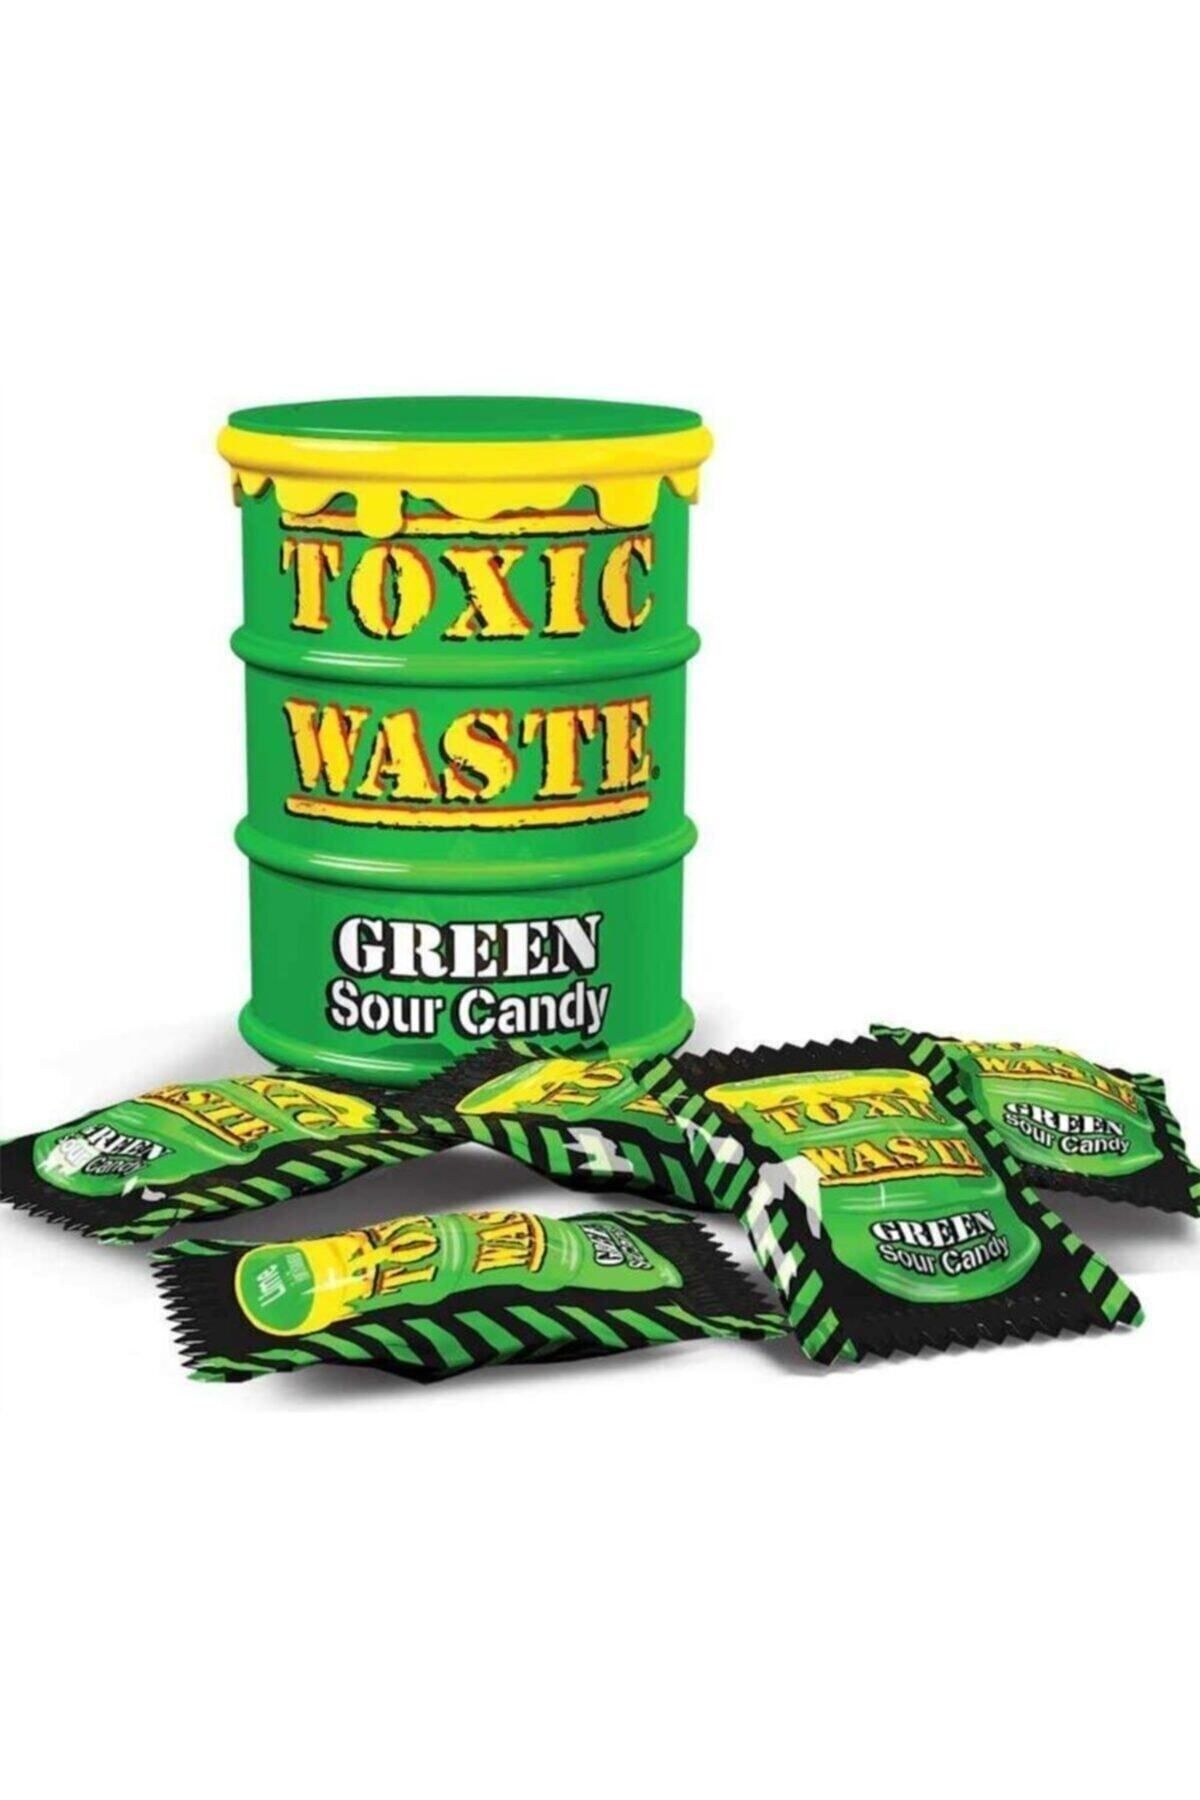 Toxic Waste Green Sour Candy Ekşi Şeker 42 g Fiyatı, Yorumları - Trendyol